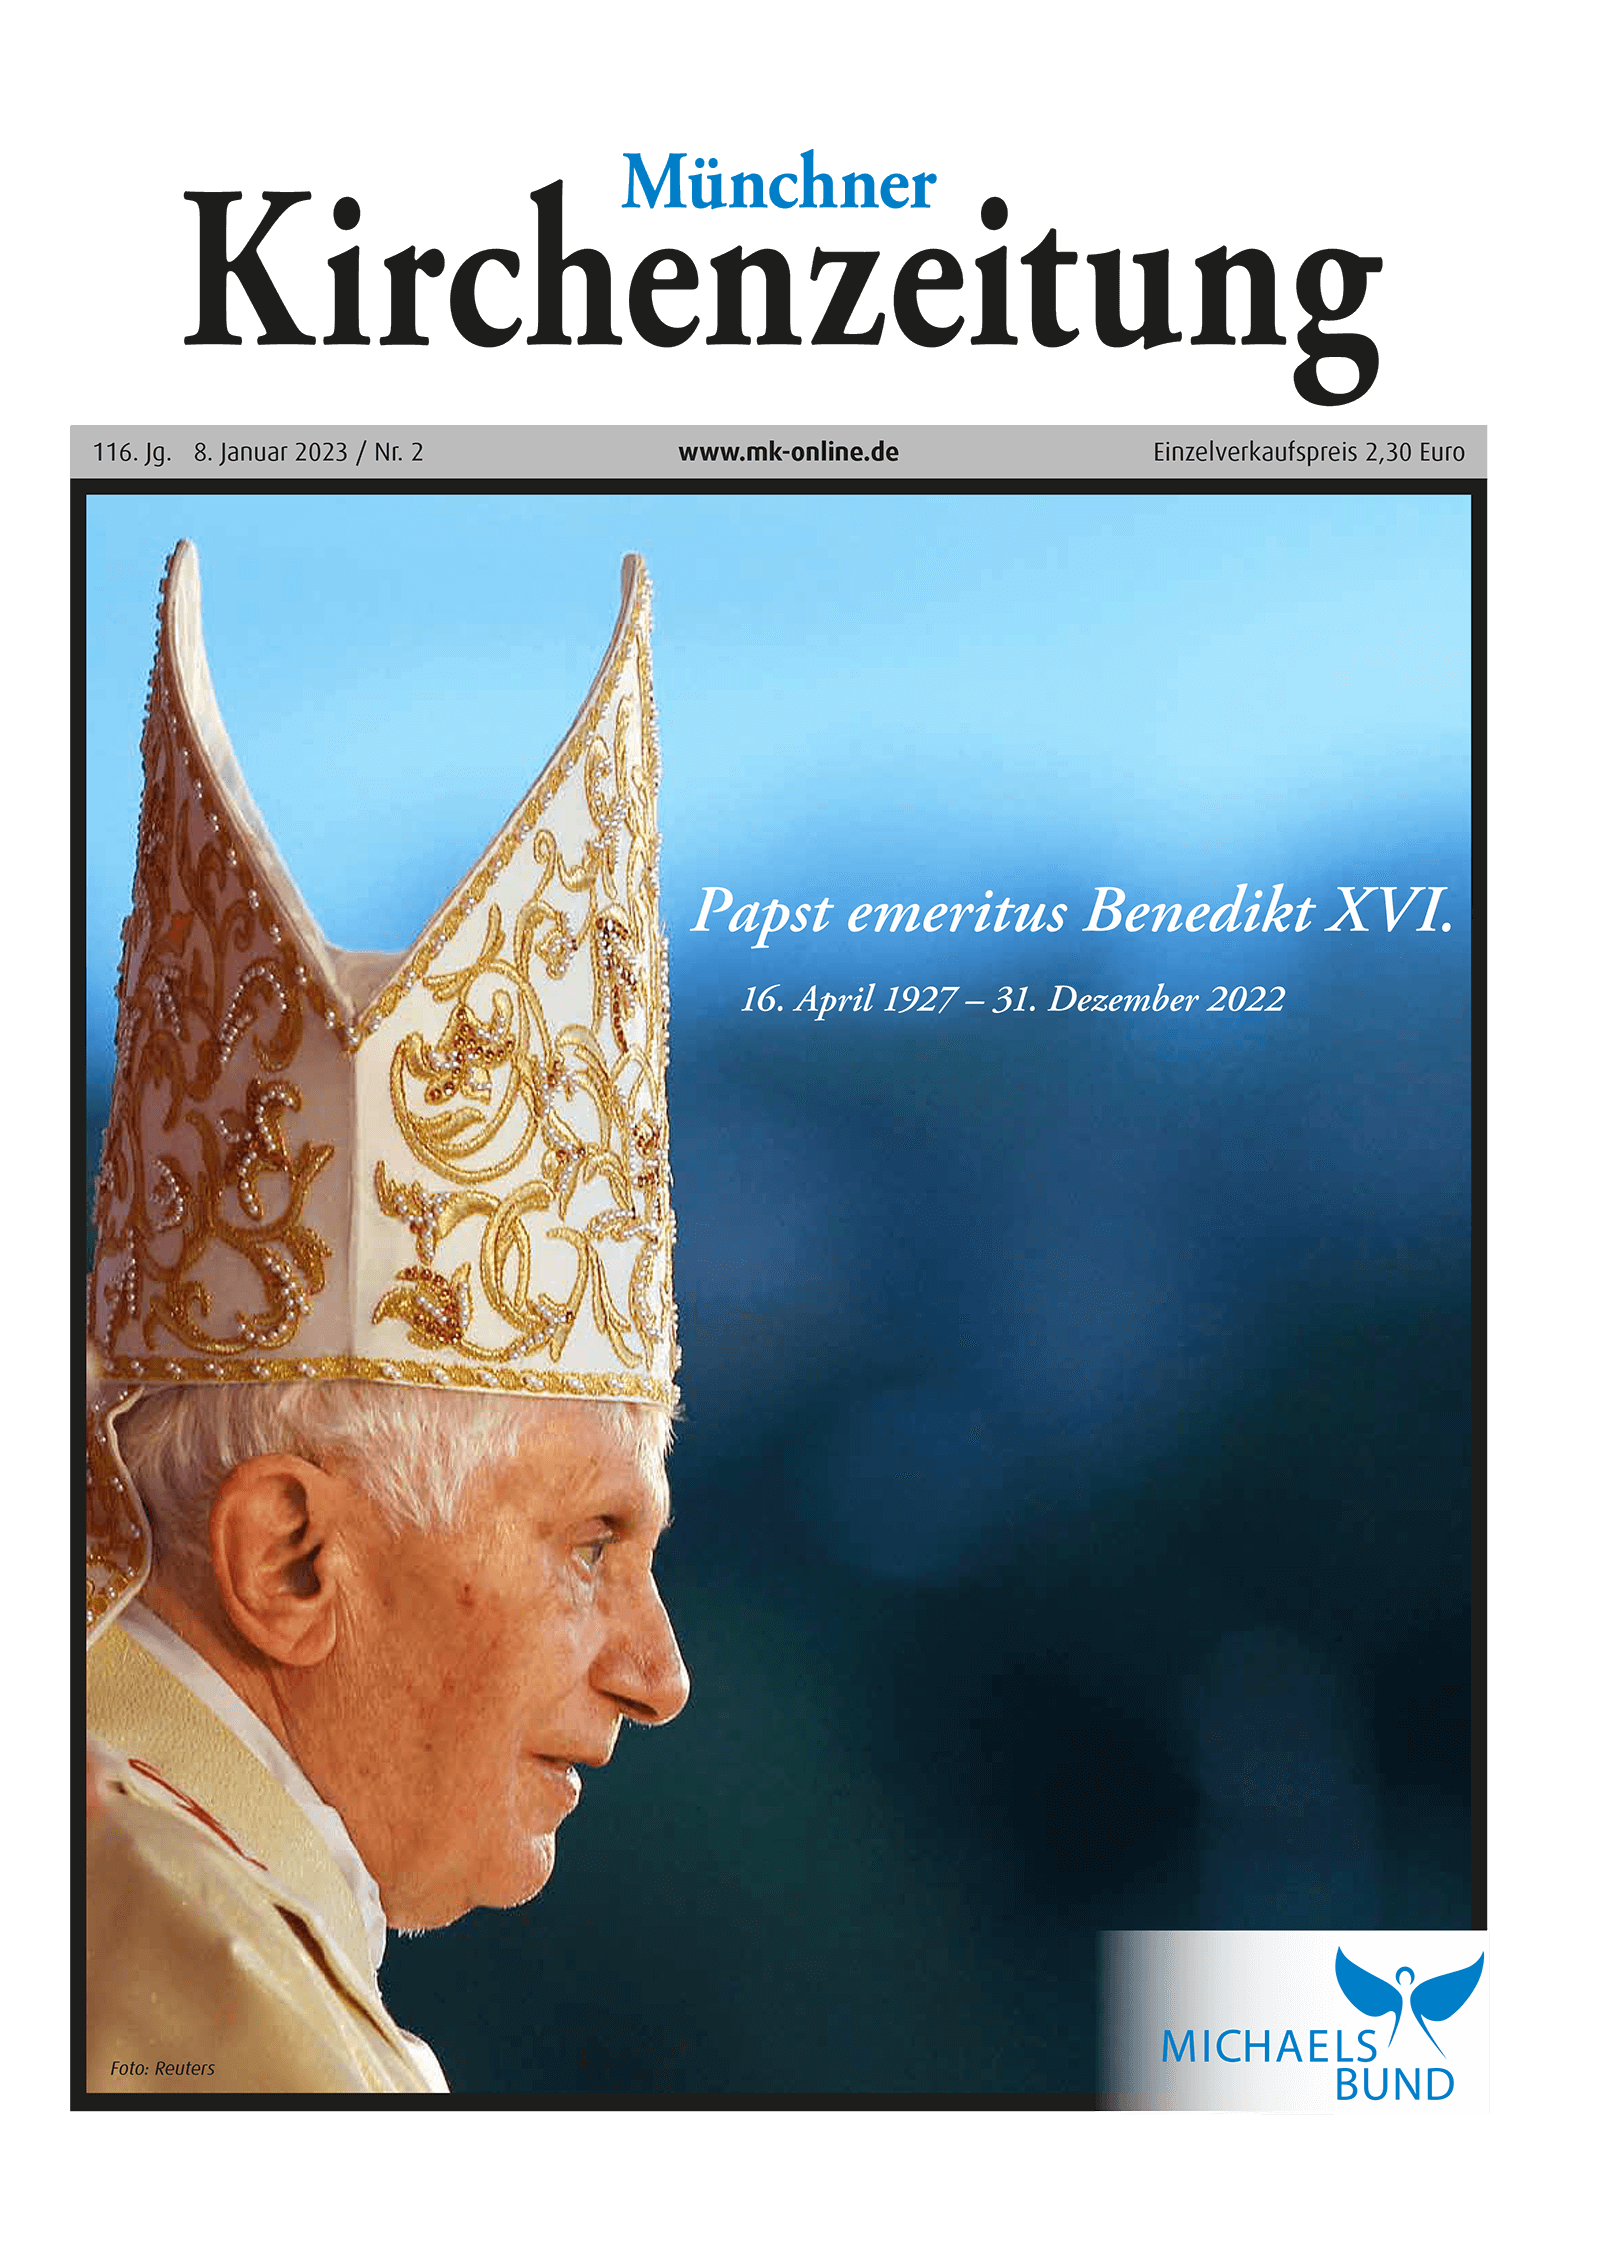 Titelbild der Münchner Kirchenzeitung vom 08. bis 15.01.2023